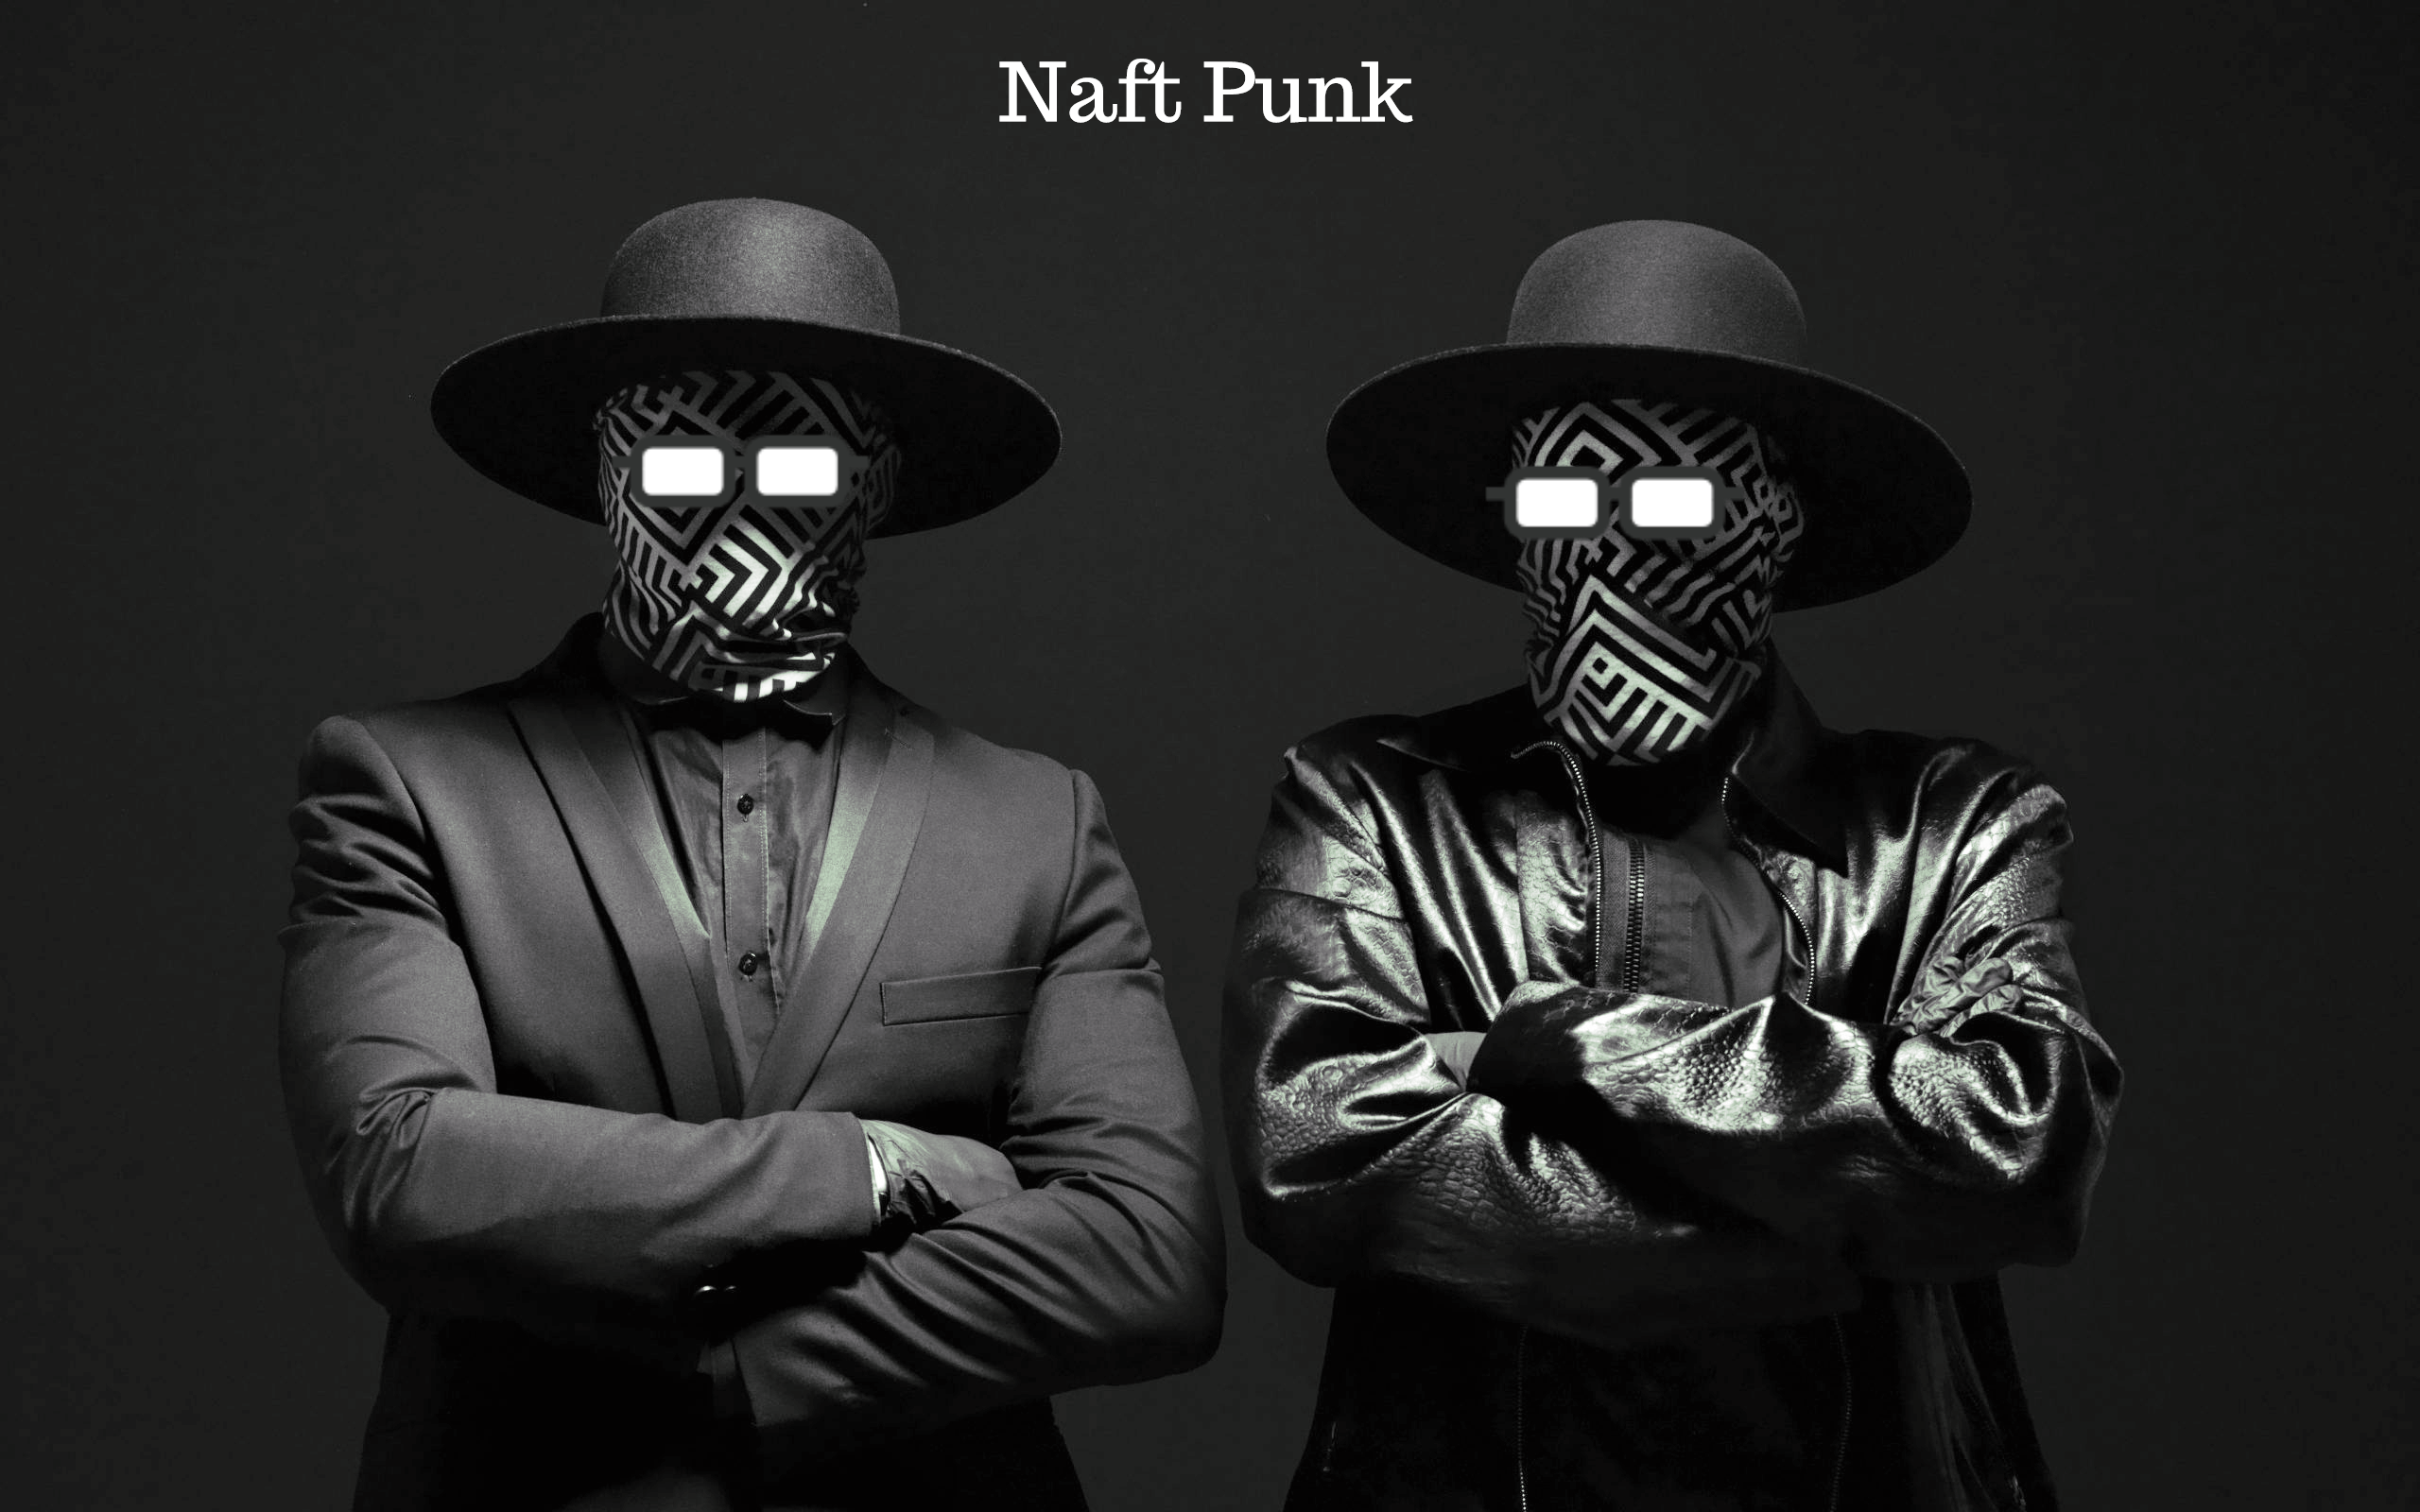 I Naft Punk pubblicano “Zona Rossa” singolo d’esordio, esorcizzando questo momento particolare